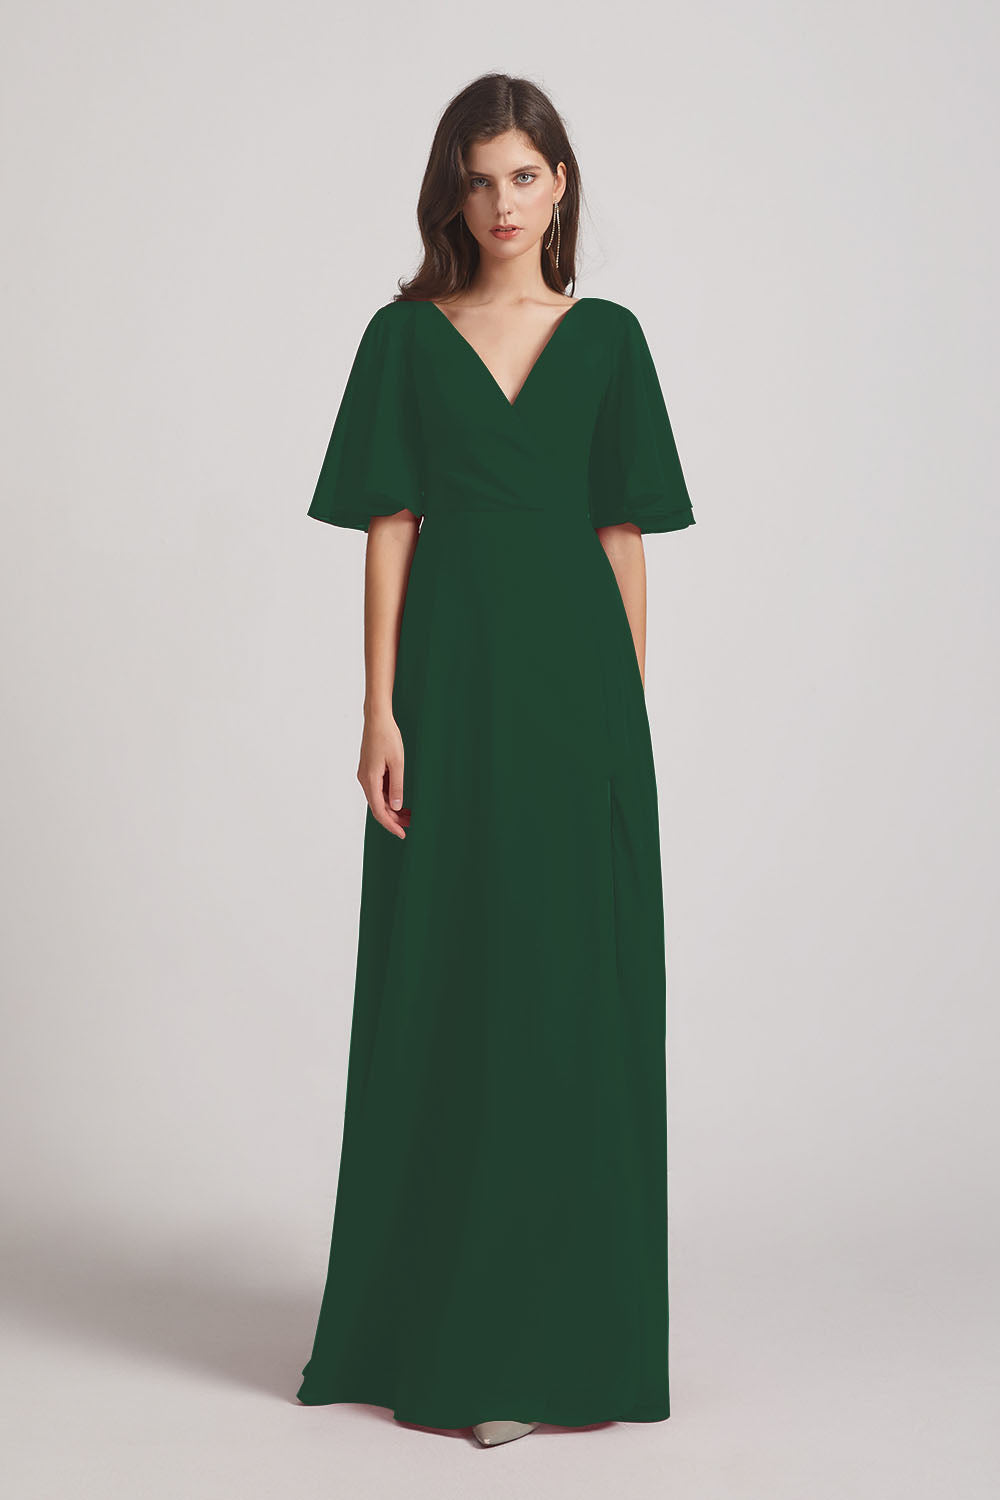 Alfa Bridal Dark Green V-Neck Chiffon Side Slit Bridesmaid Dresses With Flutter Half Sleeves (AF0056)